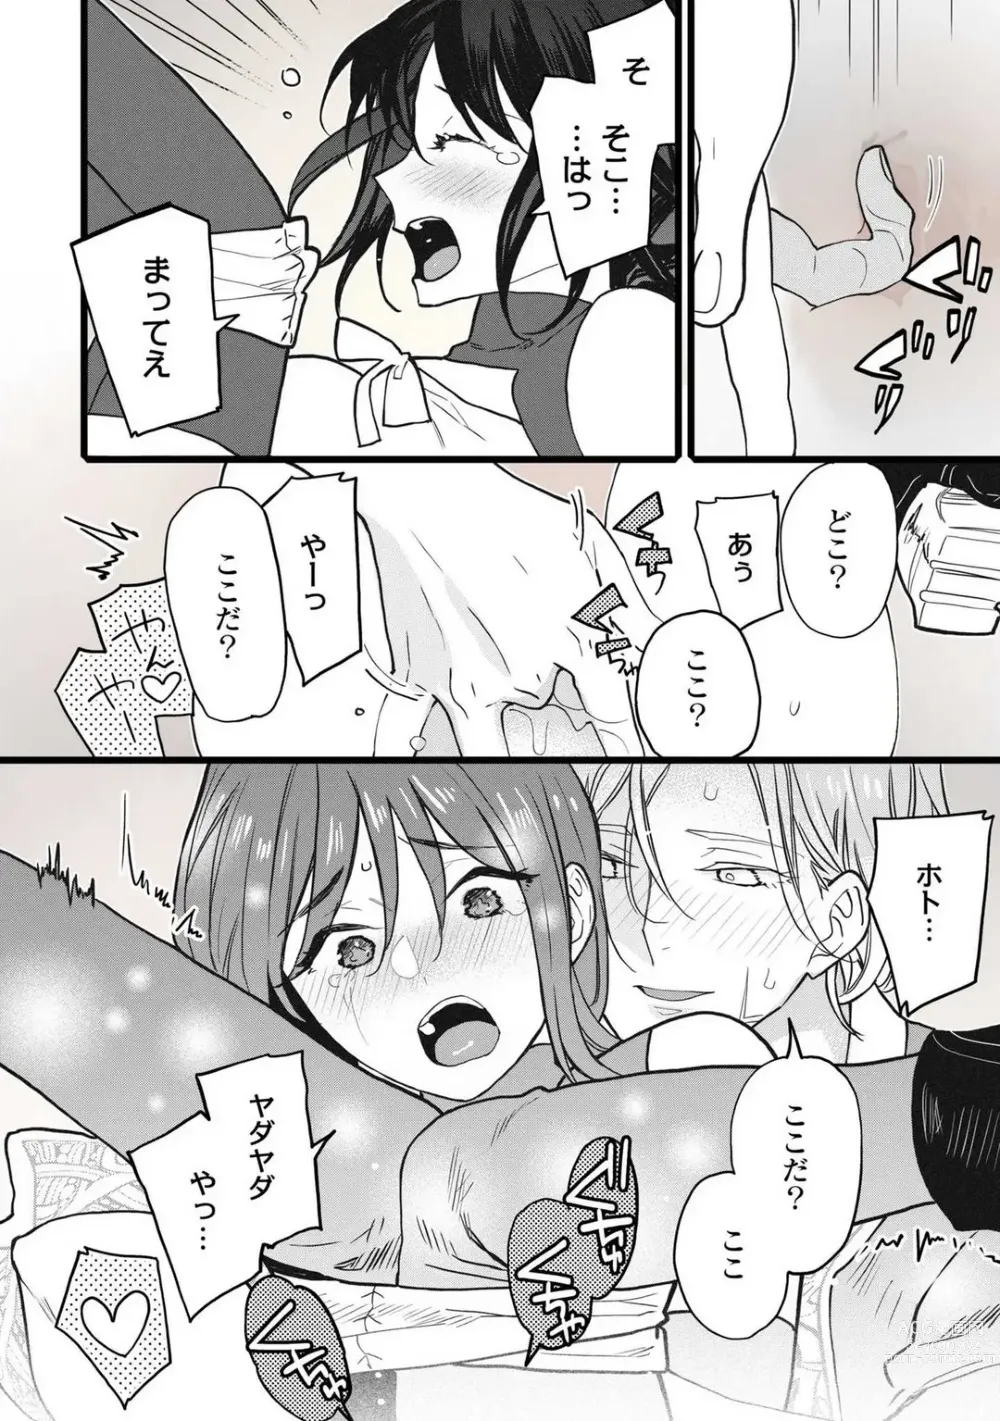 Page 194 of manga Koisuru Himon no Senshi-Tachi 1-6